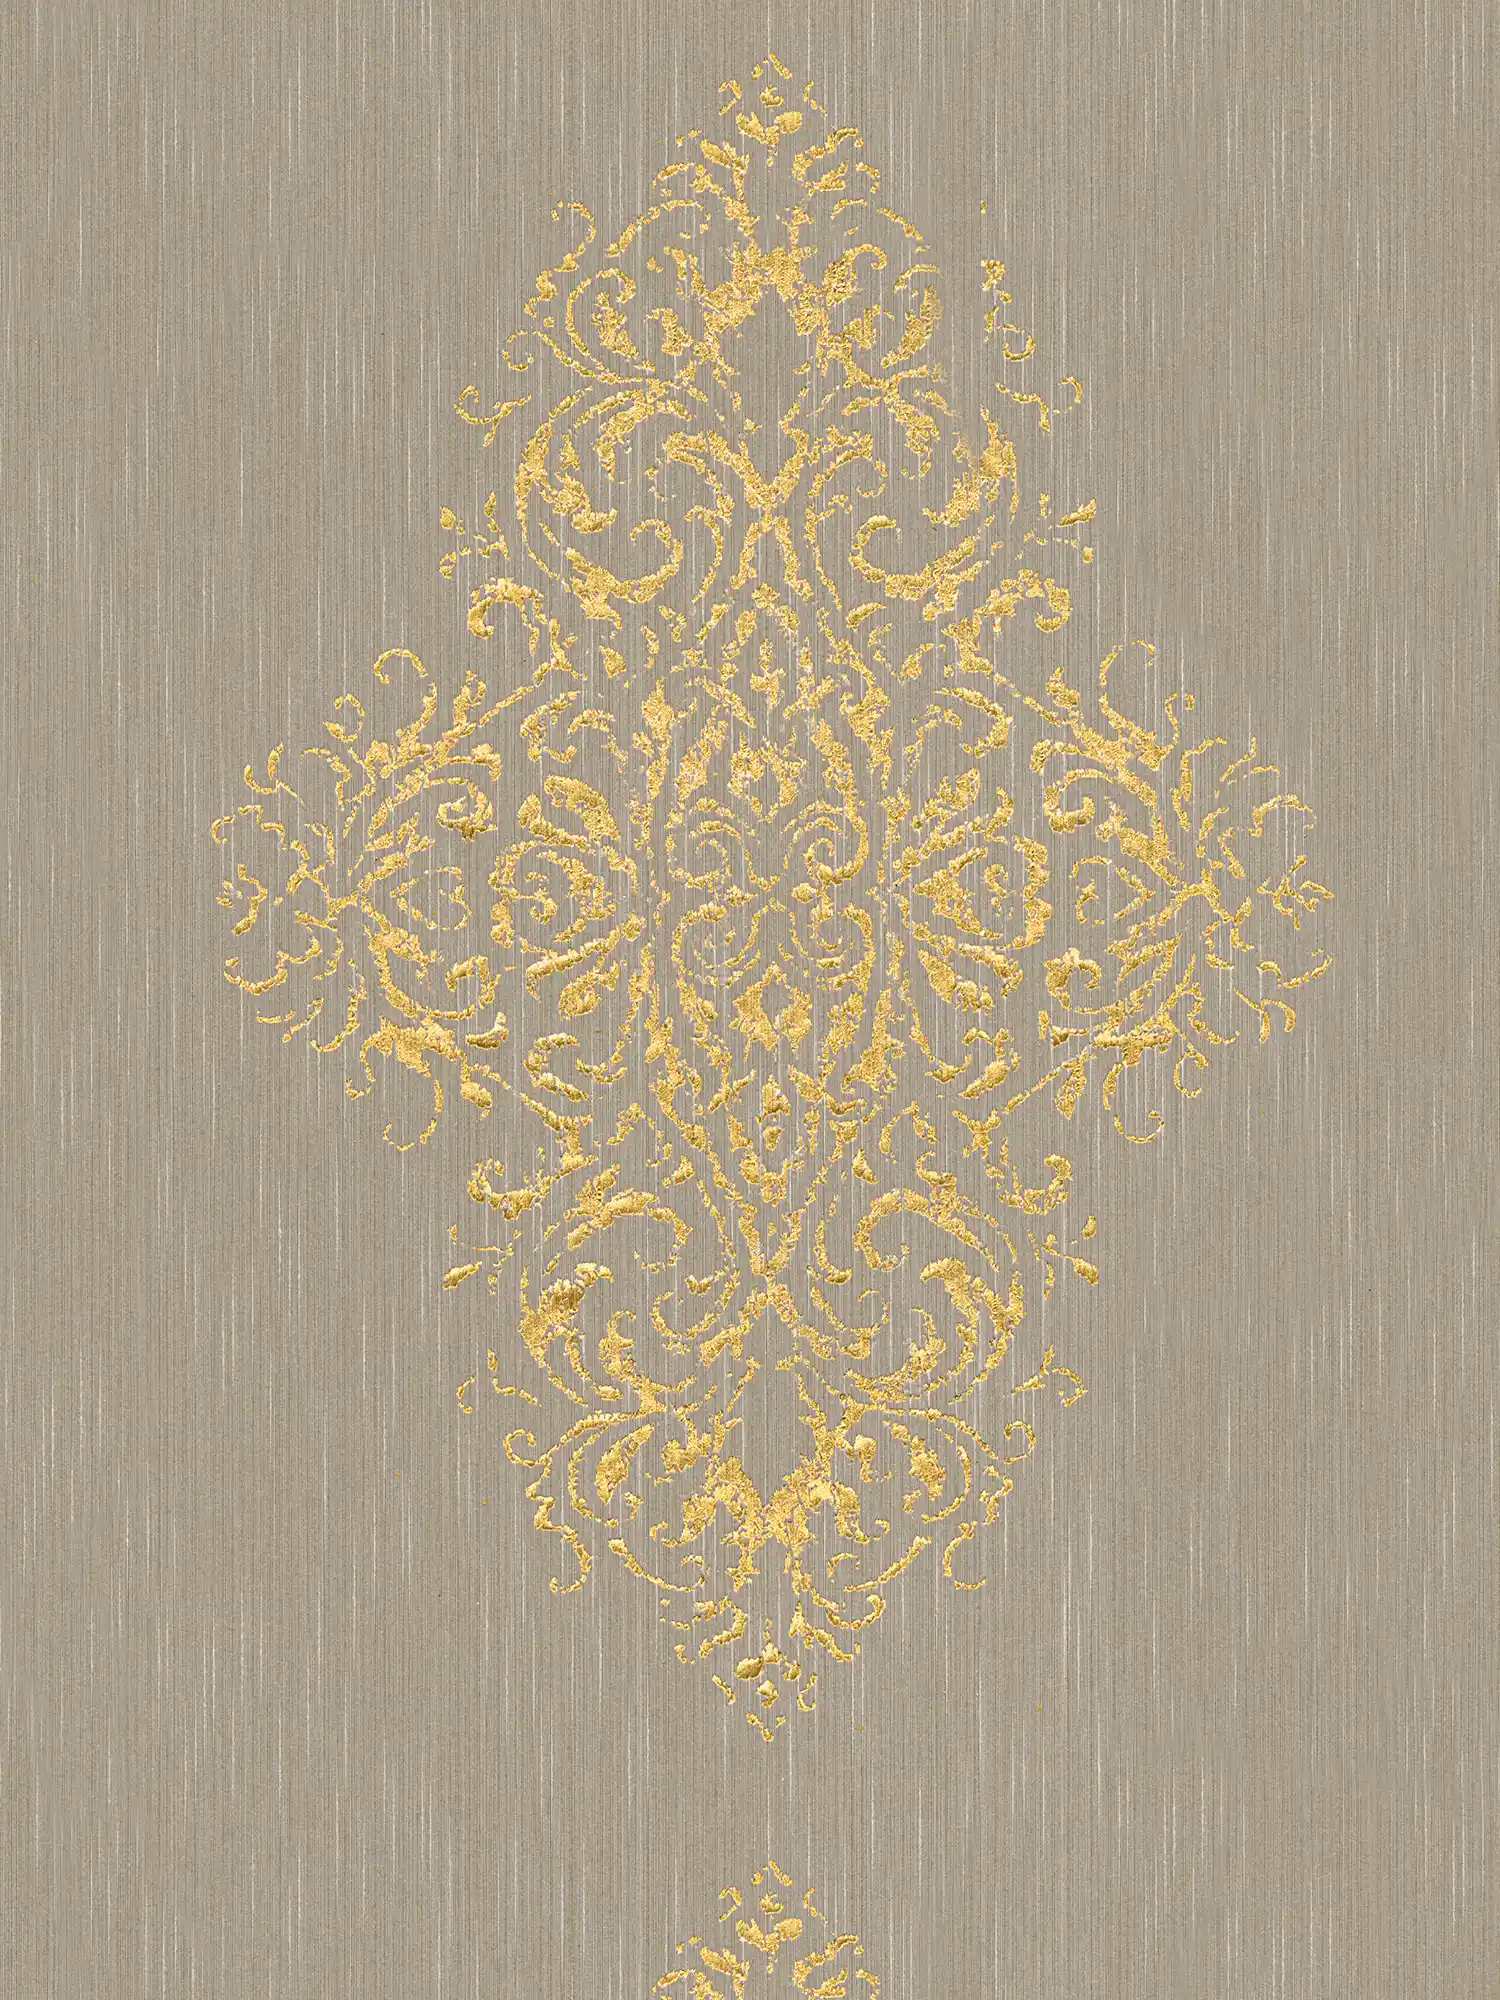             Papier peint ornemental avec effet métallique, look usé - beige, or
        